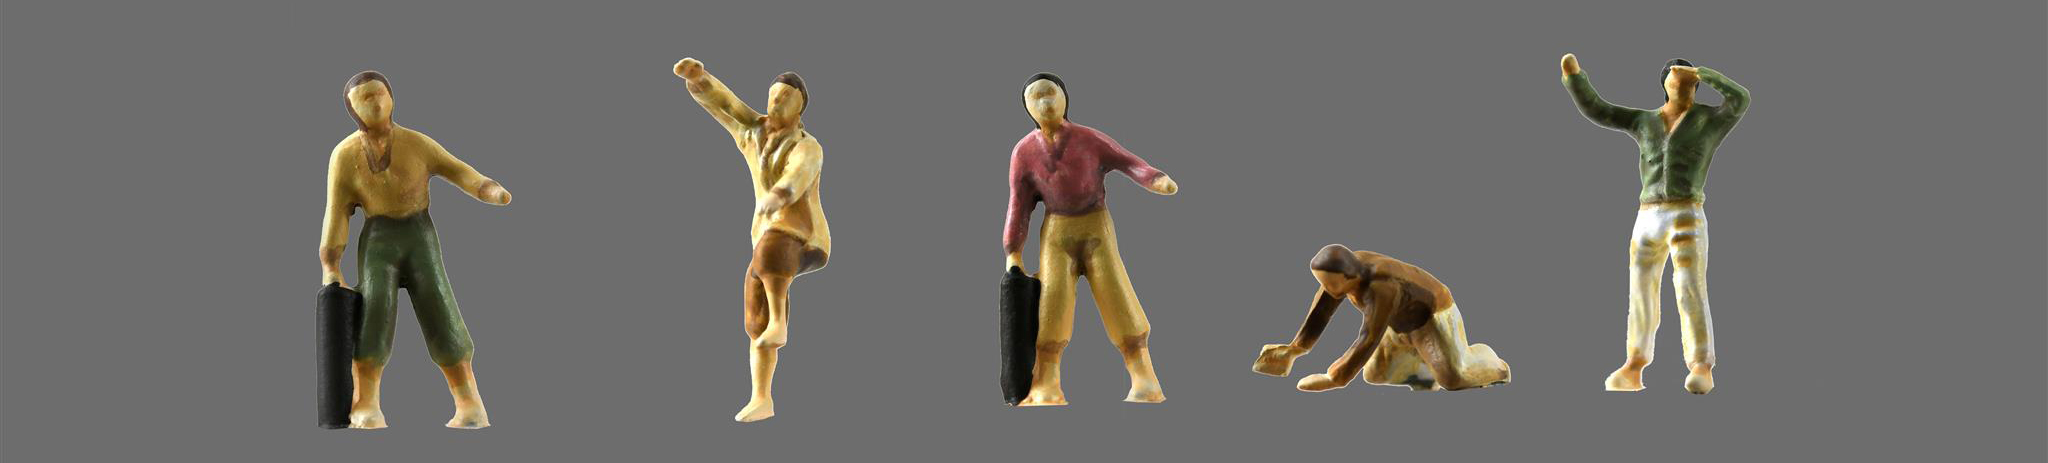 Set de 5 Figurines de Regalo en el Kit de Modelismo Santísima Trinidad en Madera a Escala 1/84 Edición Trafalgar 1805 (22901) de Artesanía Latina.